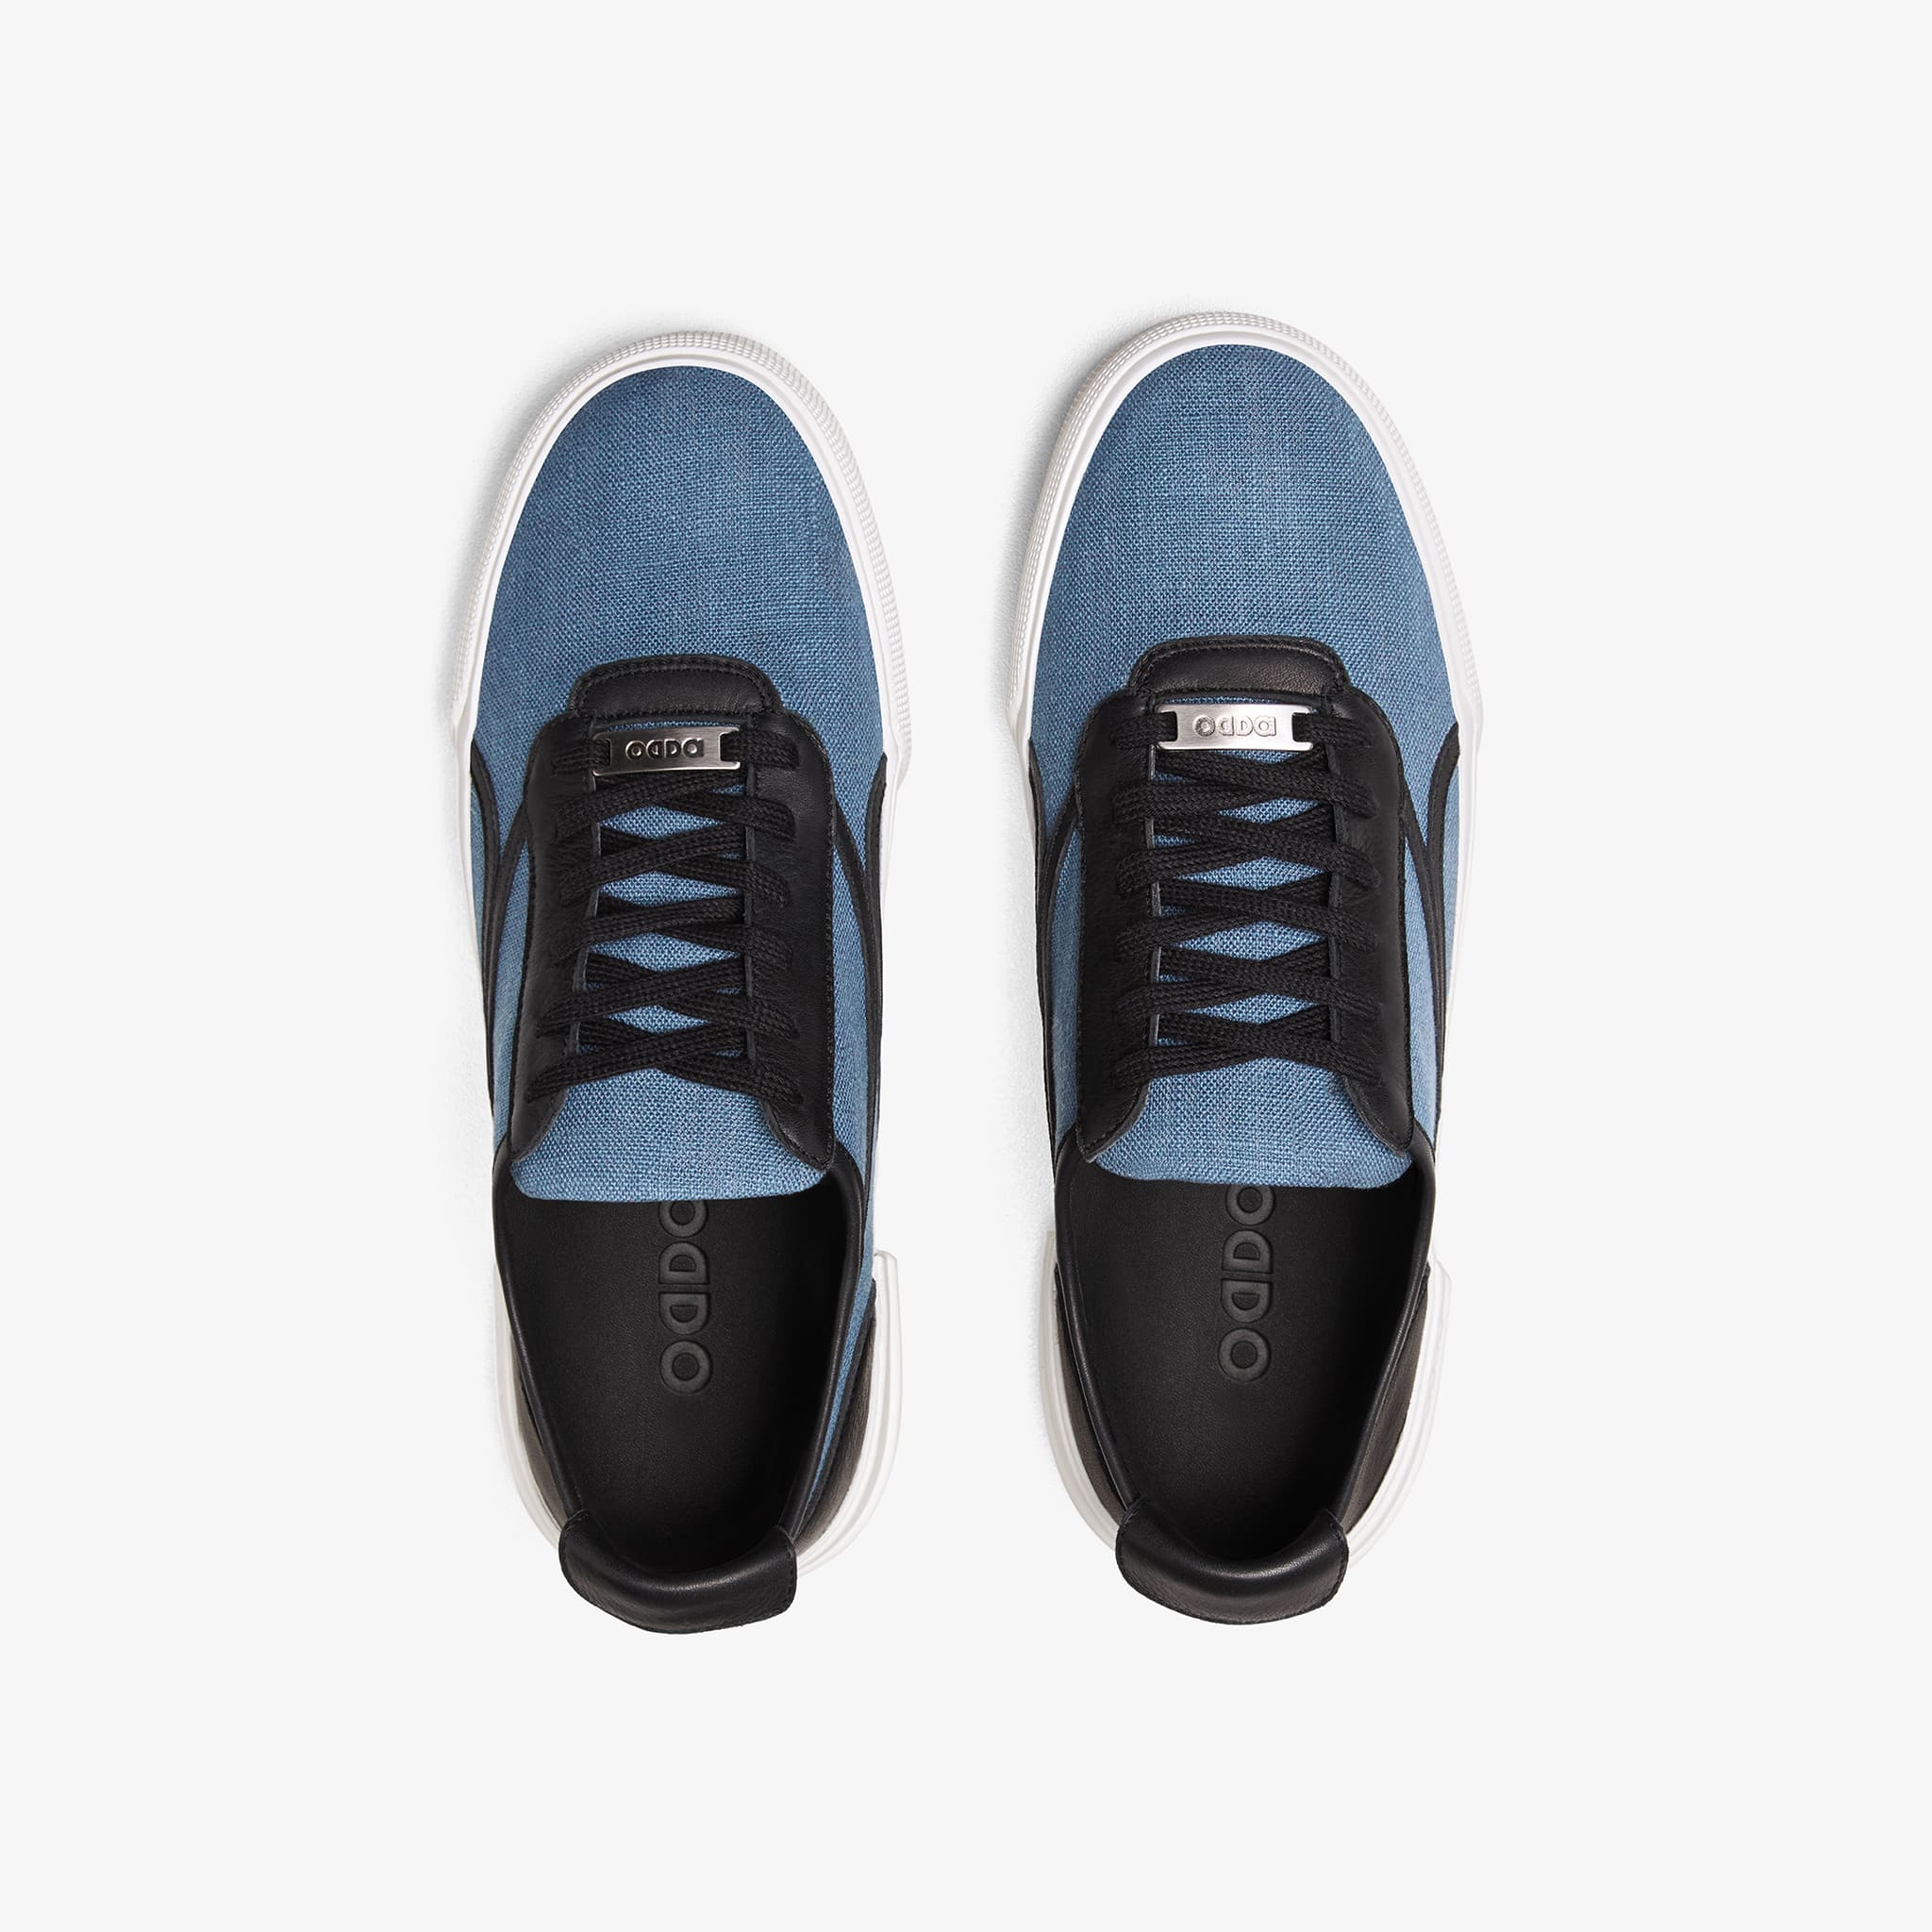 Zapatillas azules y negras para hombre y mujer Untitled 2 cenital